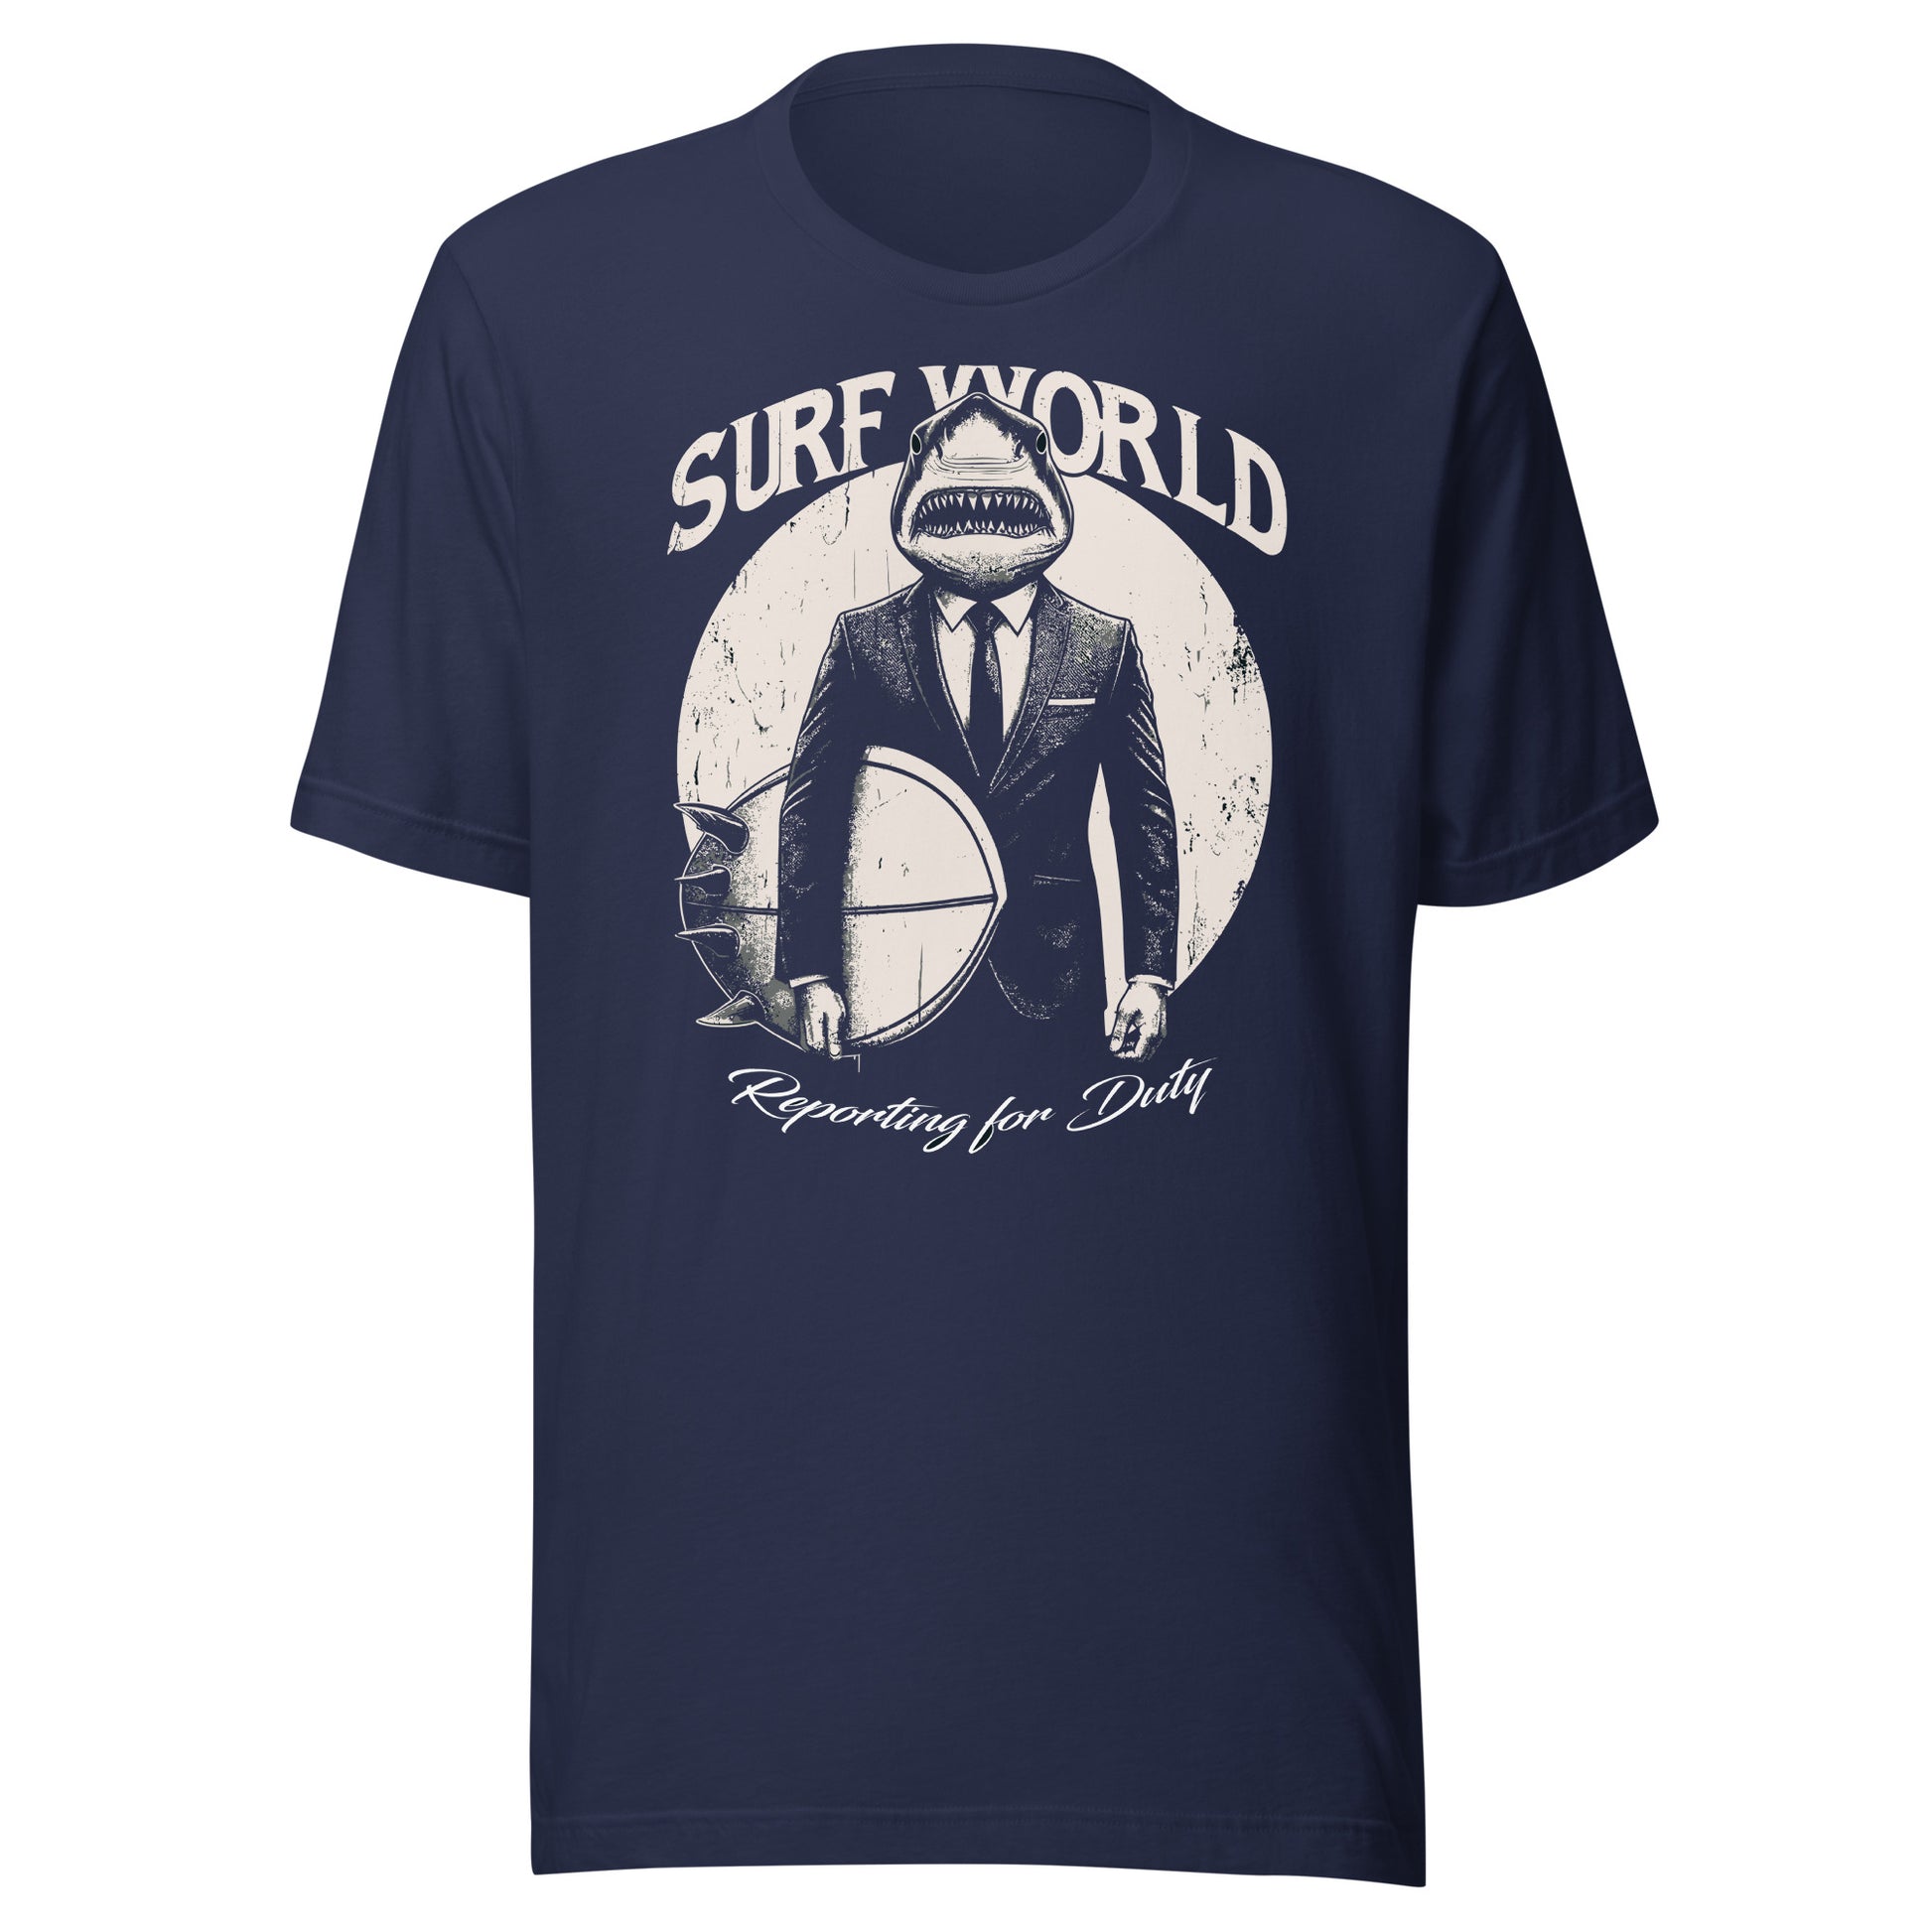 Surf World Shark Boss Reporting for Duty Tee Shirt Mens T Shirt Navy